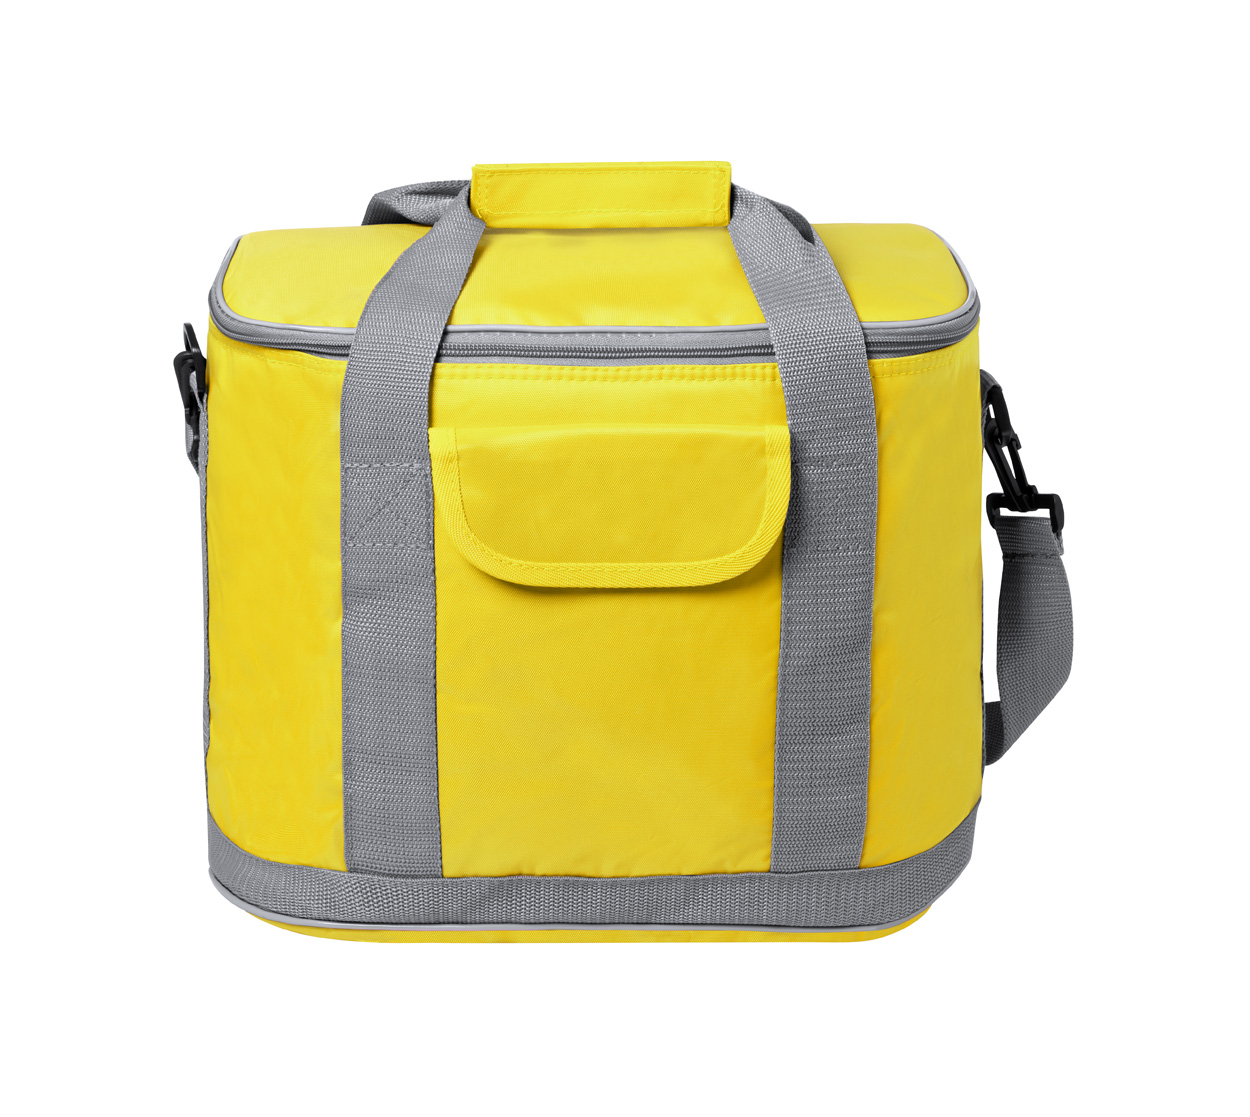 Sindy cooler bag - yellow